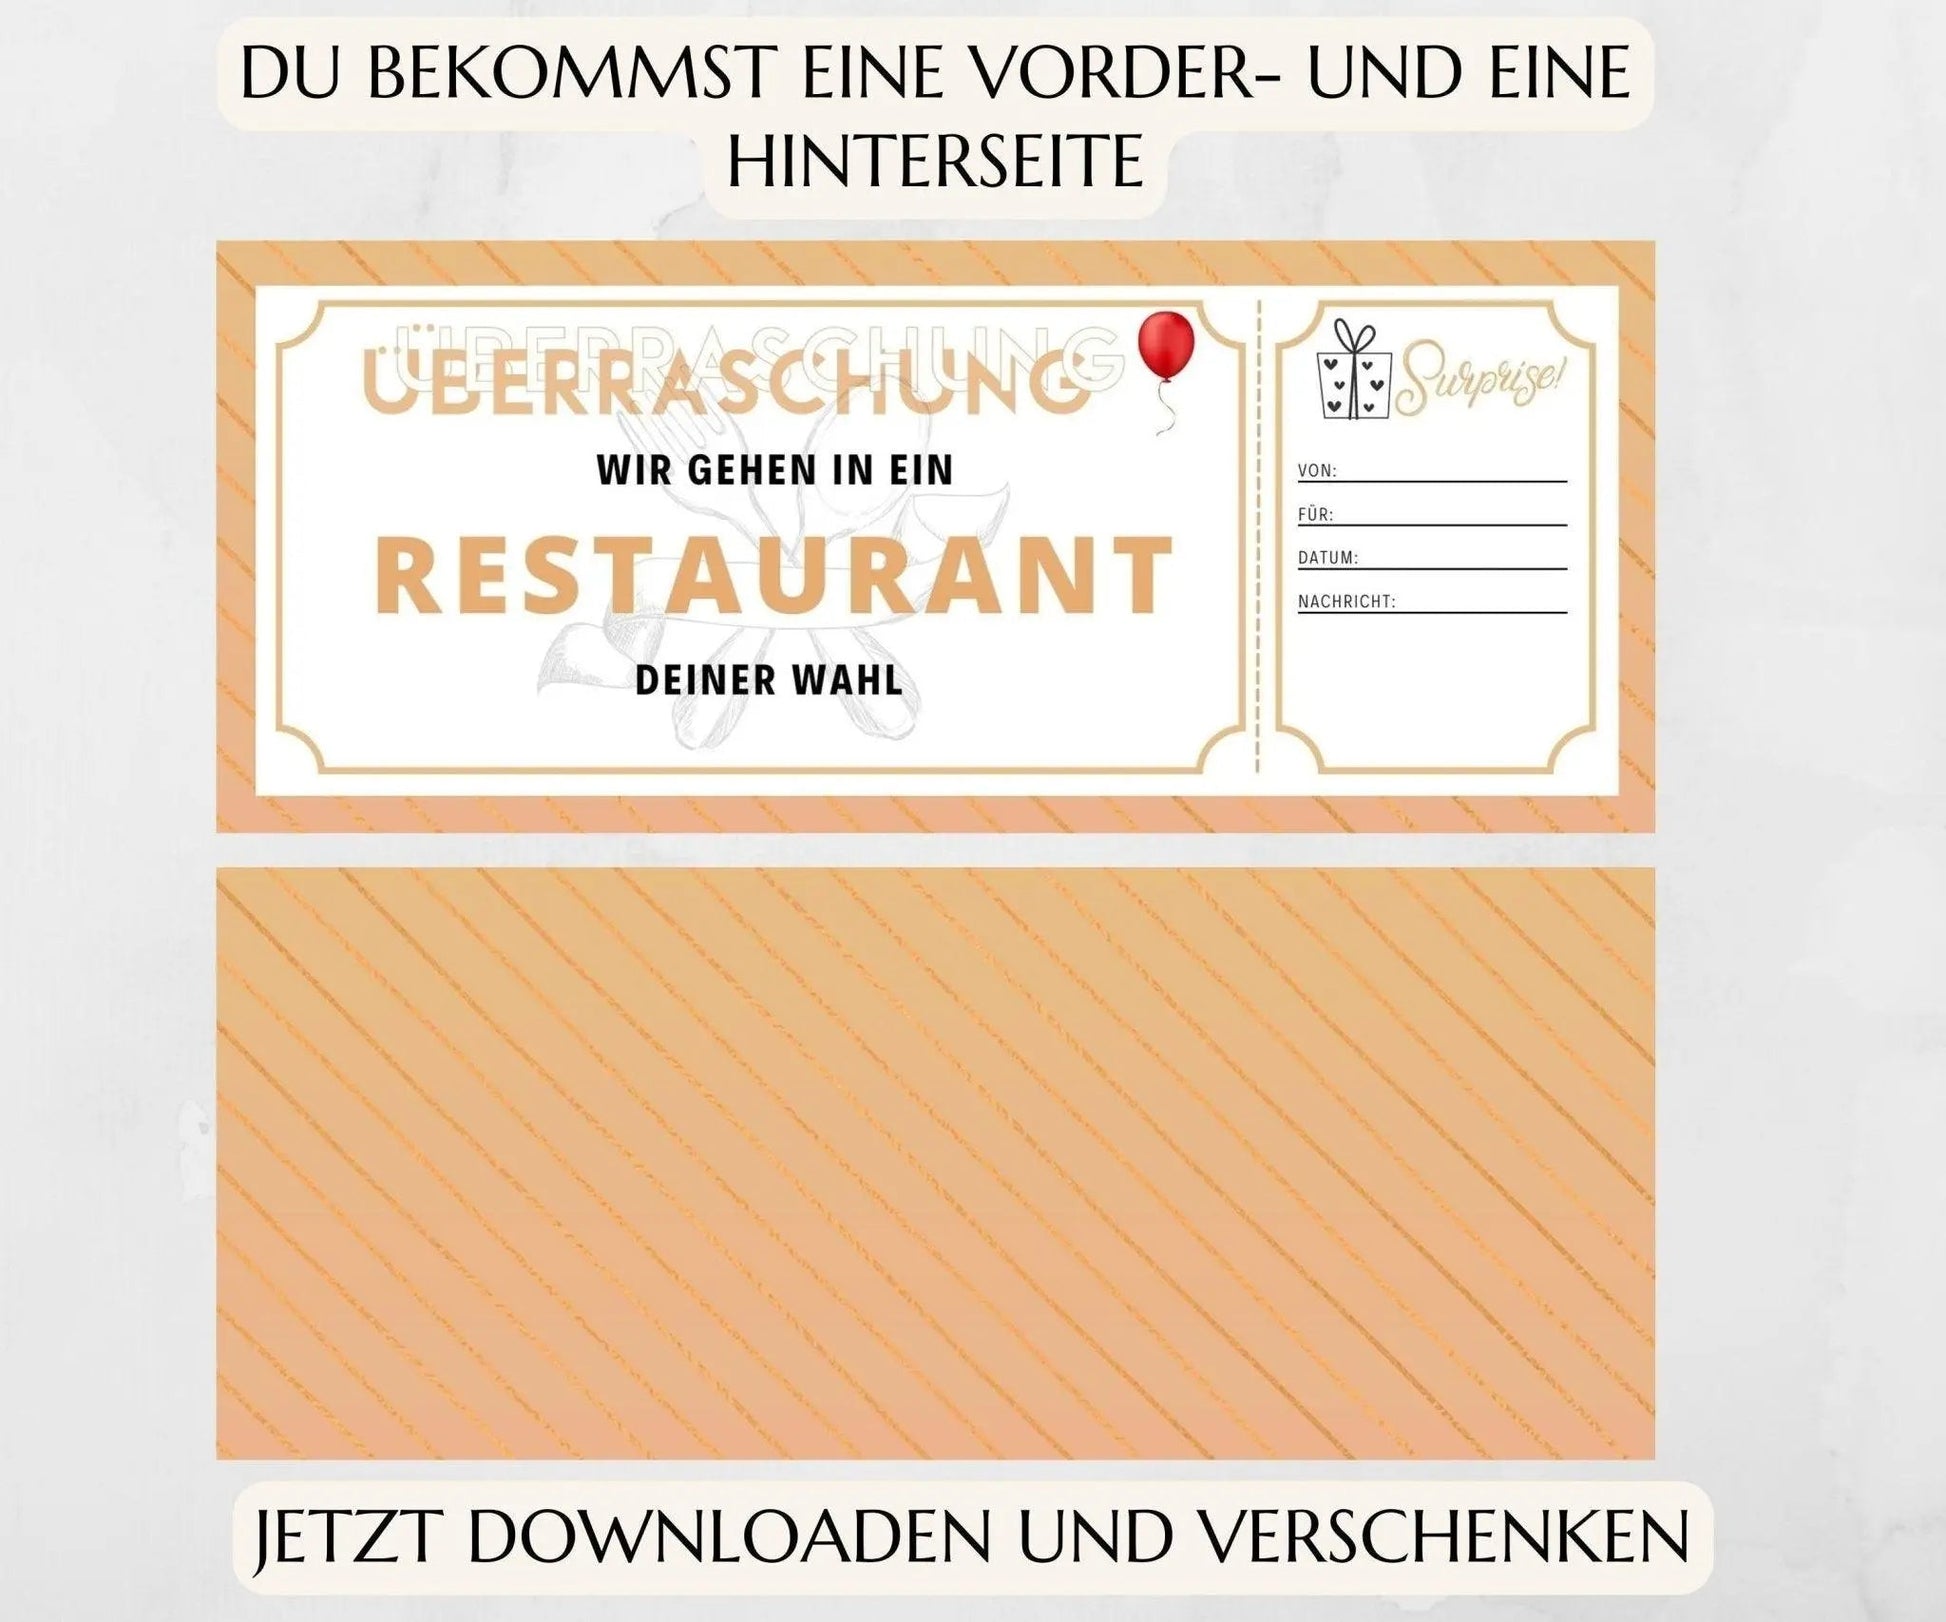 Restaurantgutschein | Gutschein Vorlage zum Ausdrucken | JSK065 - JSKDesignStudio.de